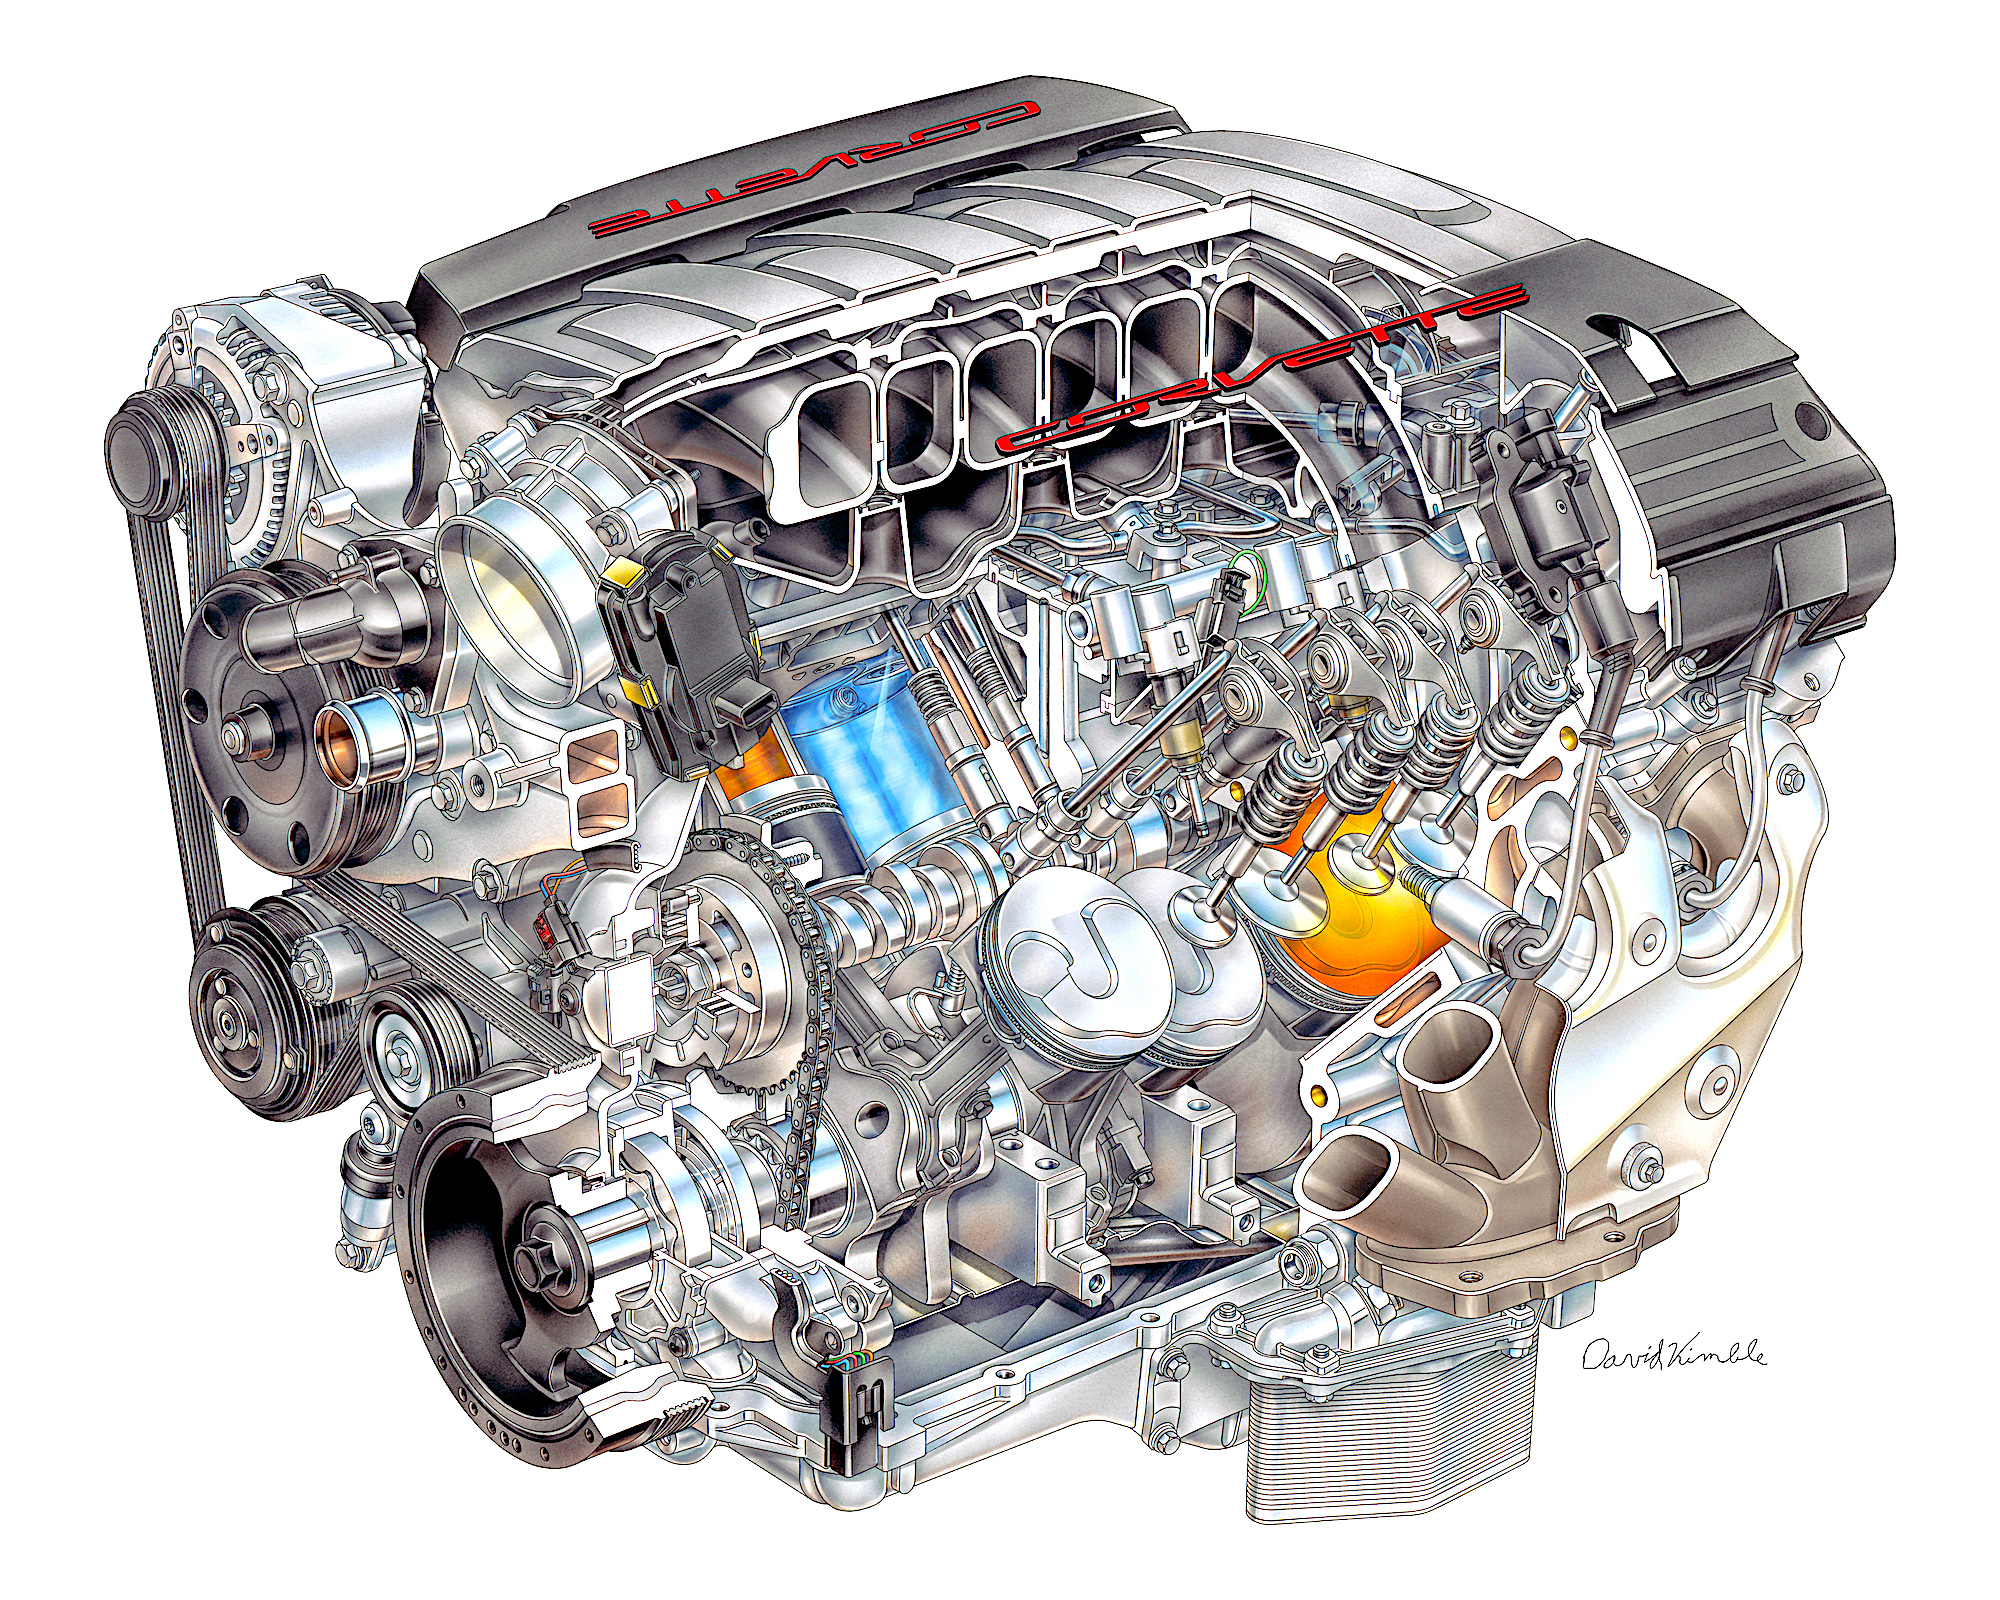 K2014 6.2L V8 VVT DI LT1 Corvette.jpg